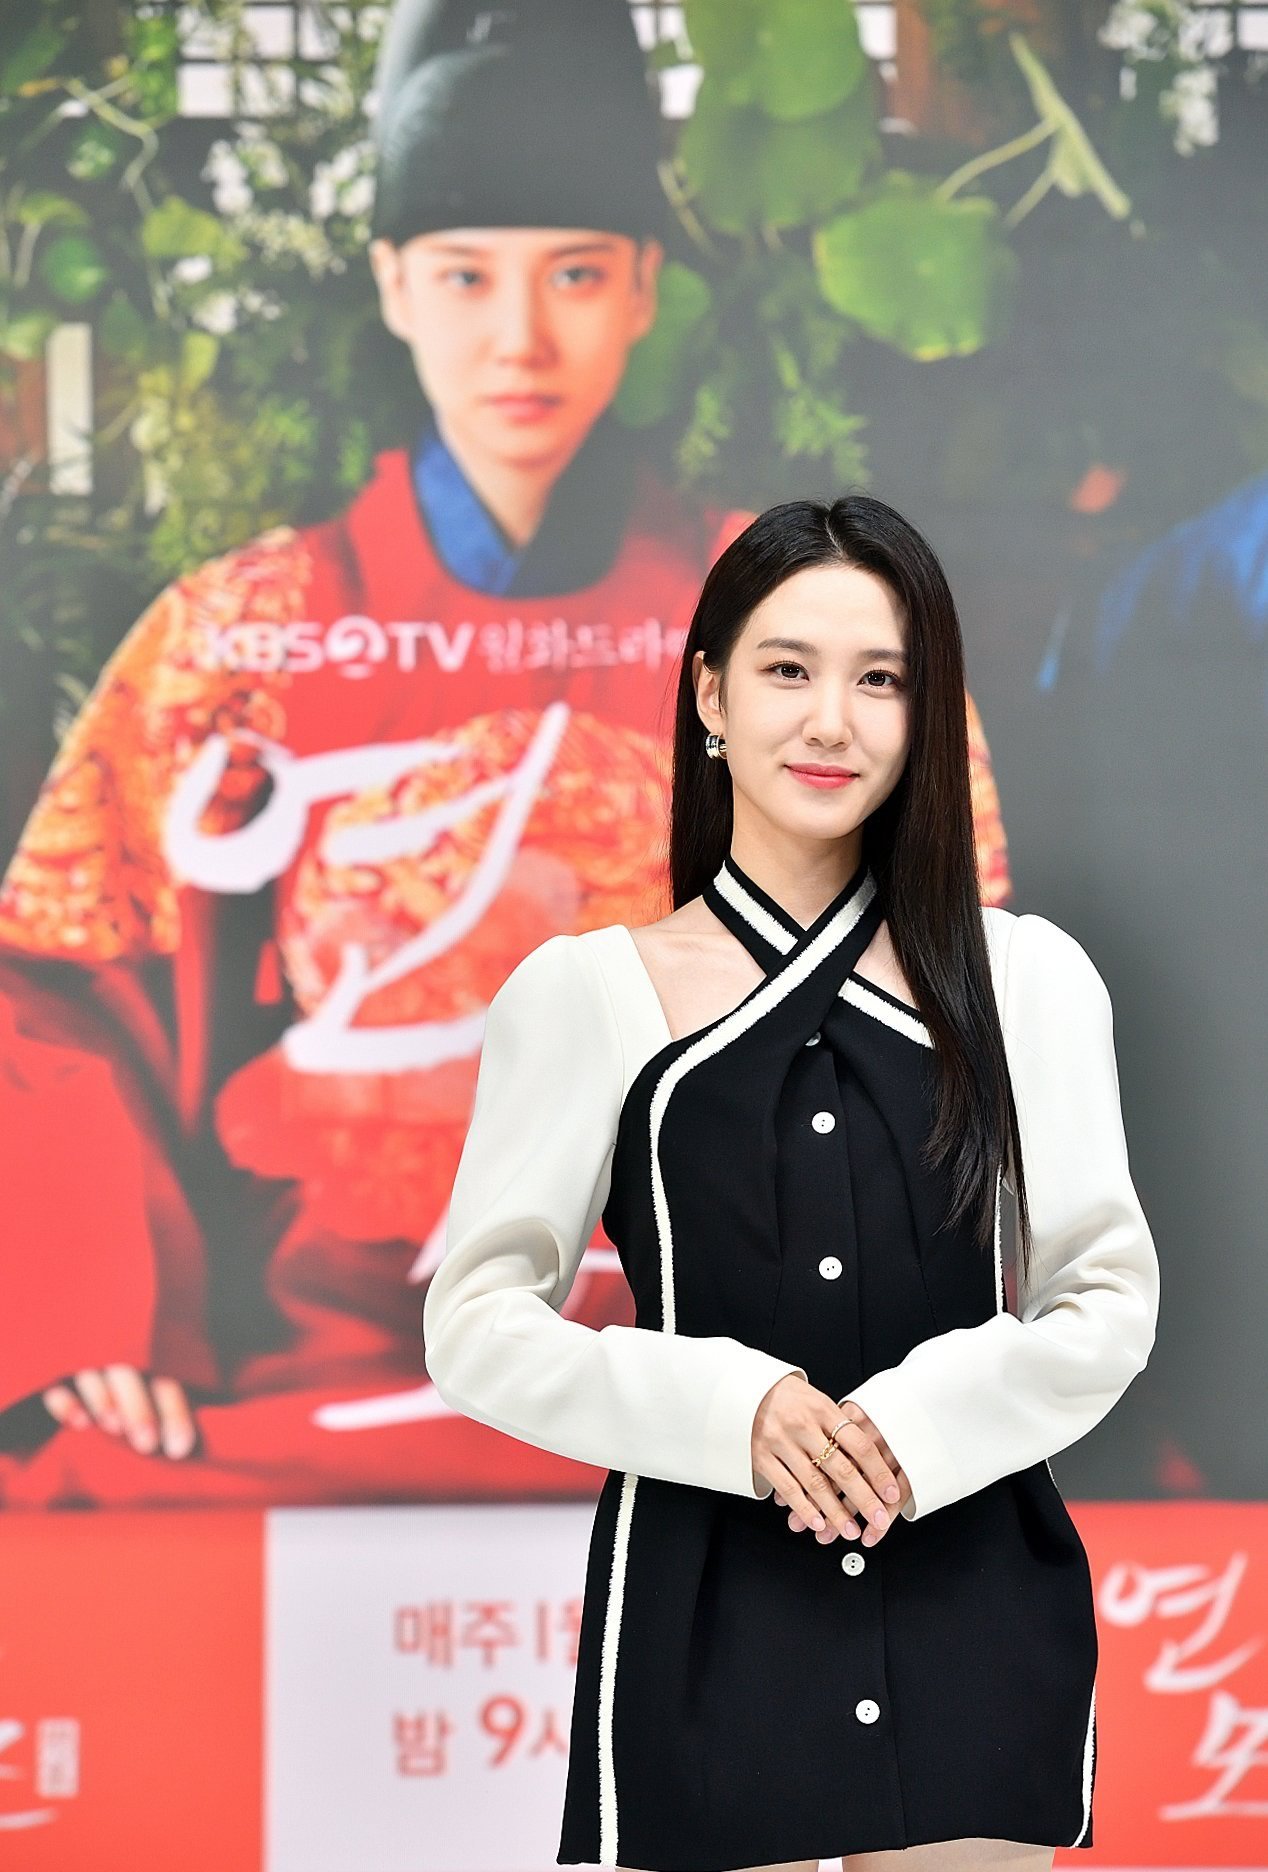 O Rei de Porcelana | Park Eun-bin e RoWoon falam sobre a série sul-coreana na rede KBS2 TV